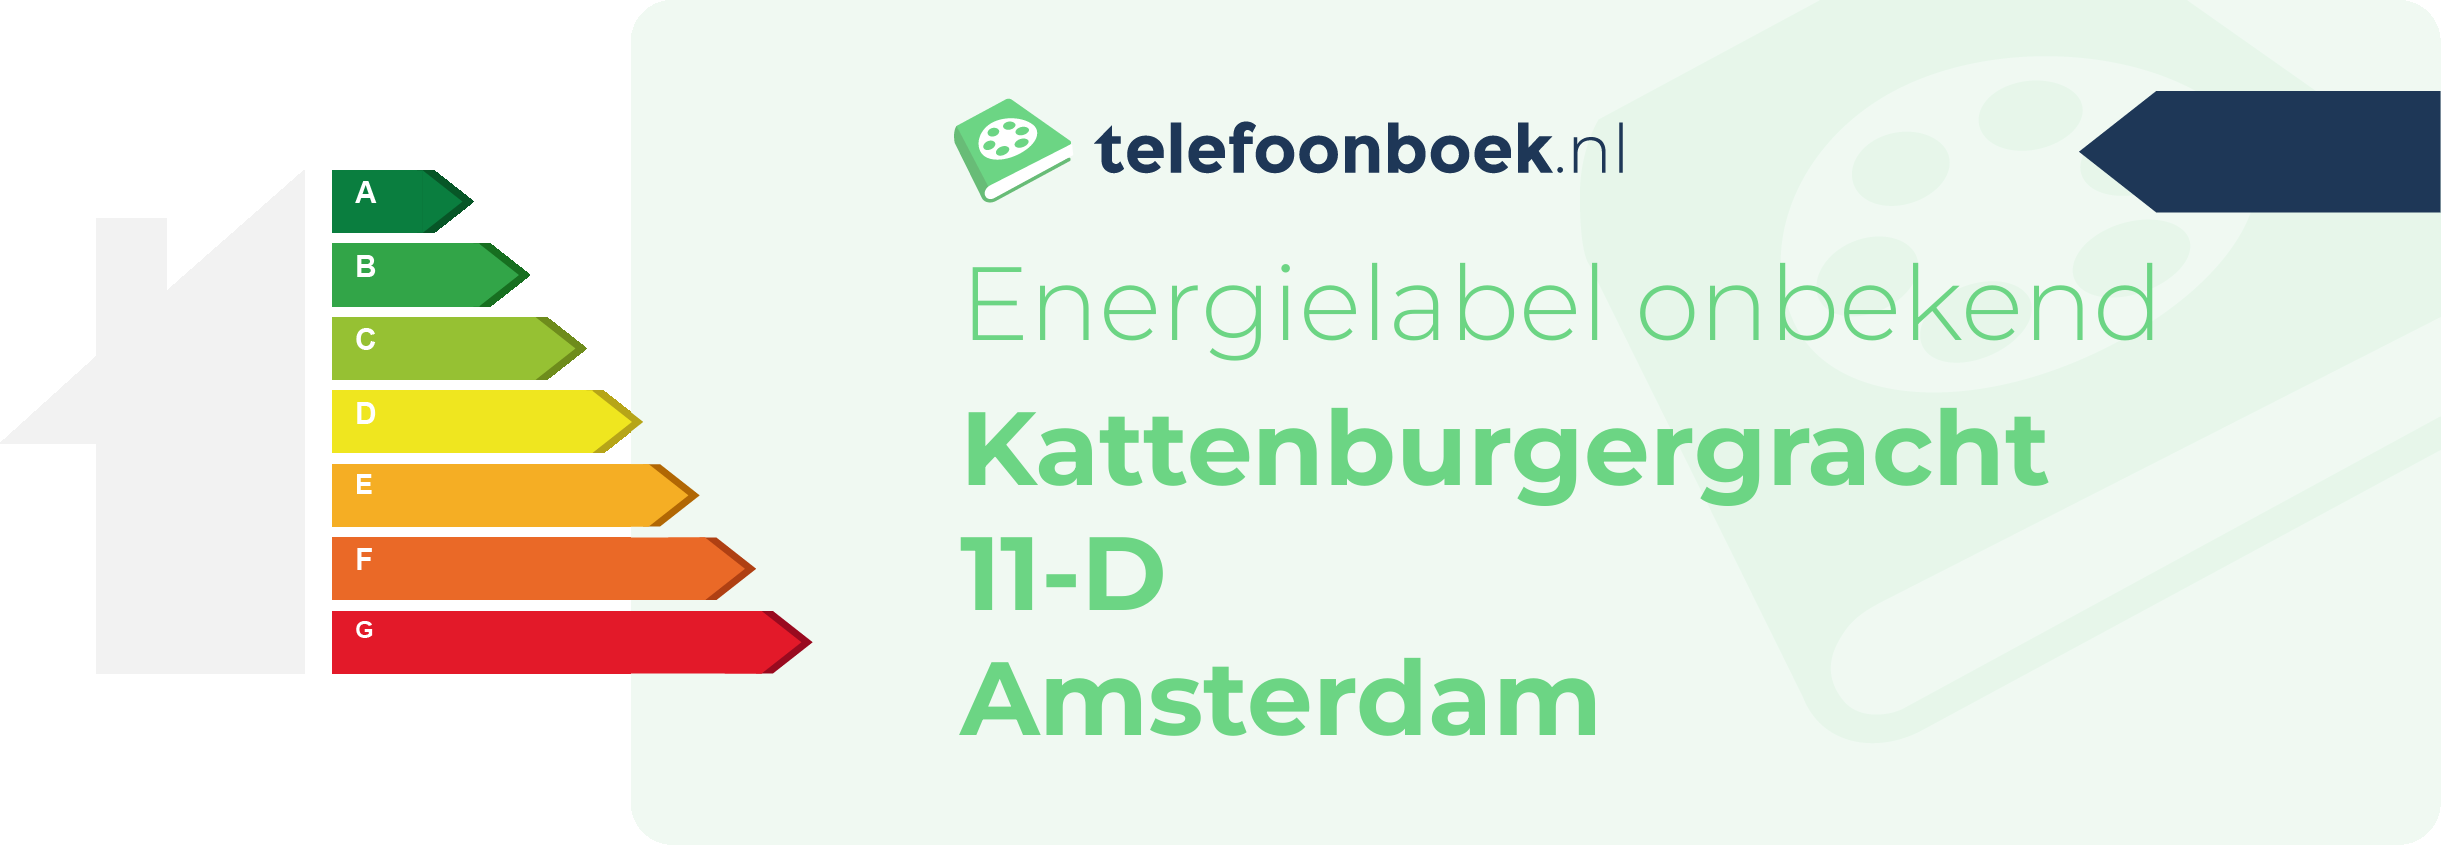 Energielabel Kattenburgergracht 11-D Amsterdam